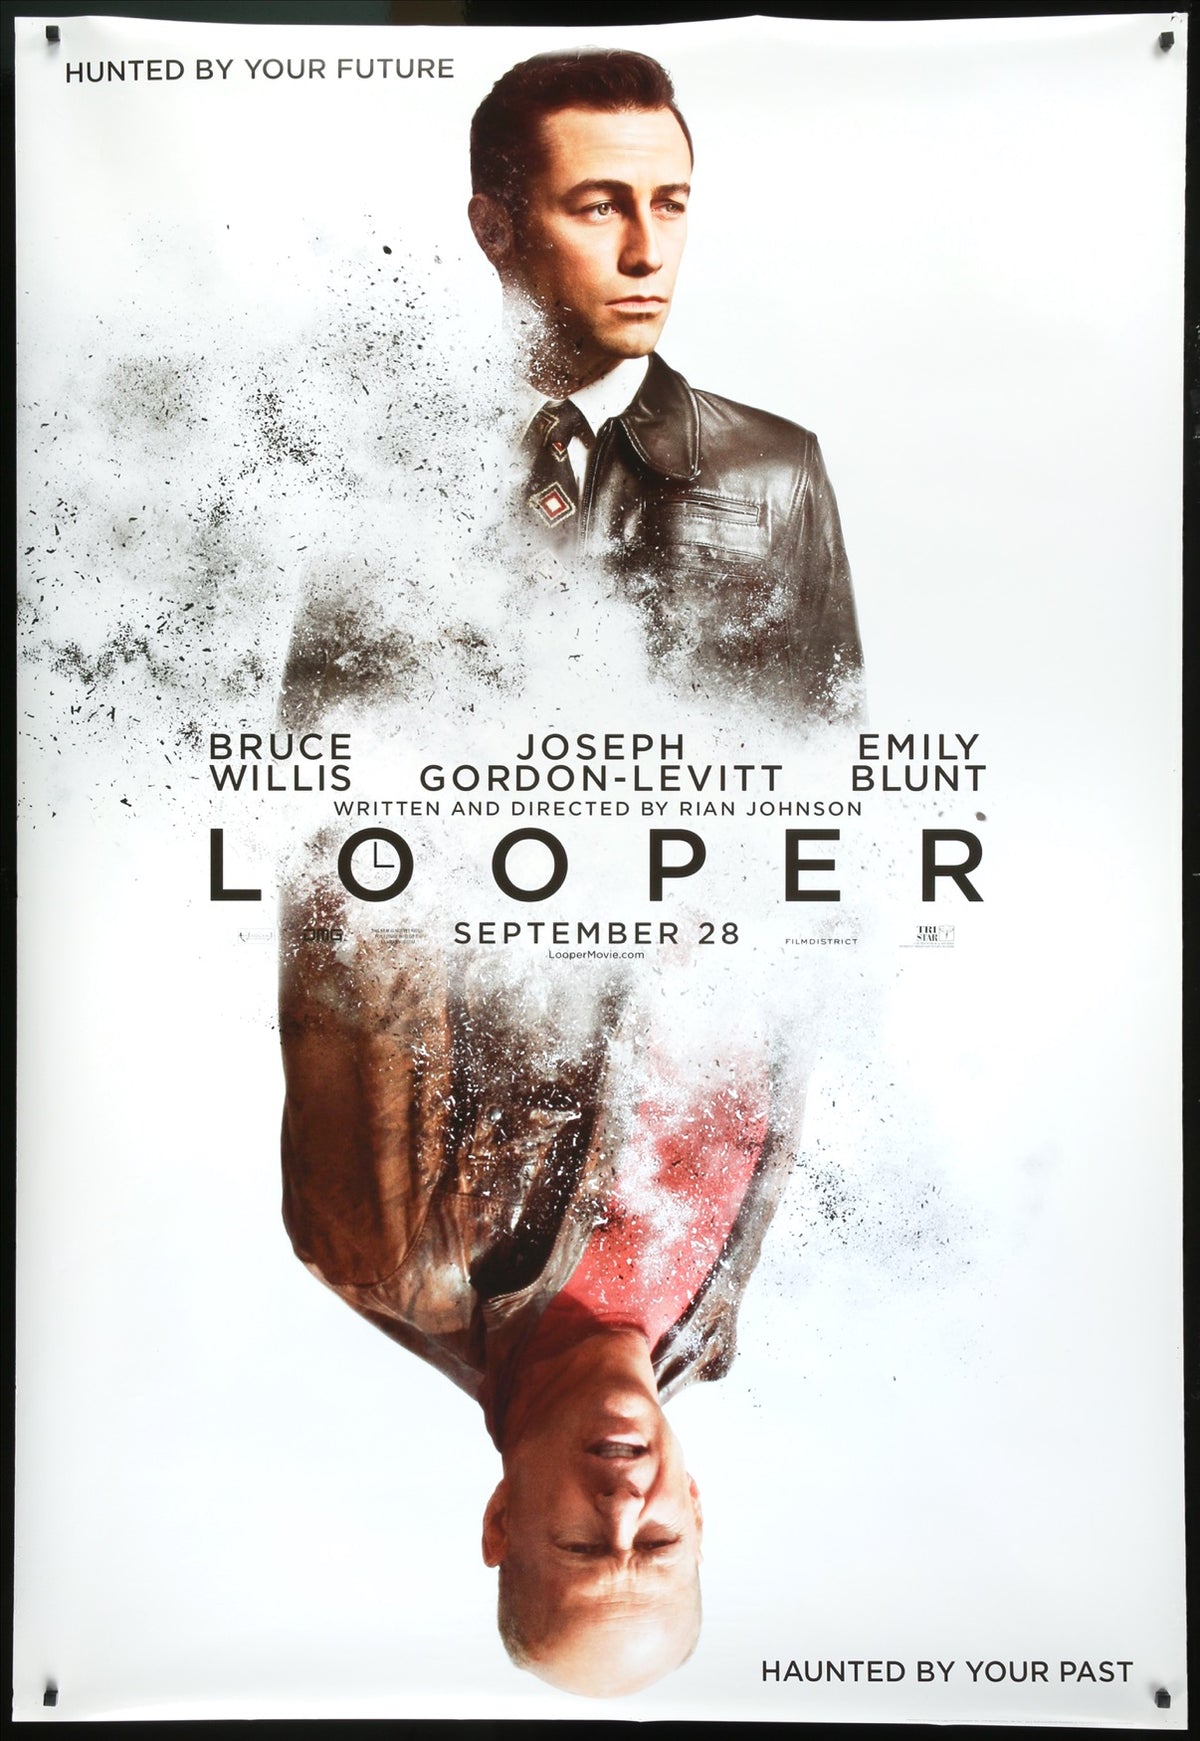 Looper (2012) original movie poster for sale at Original Film Art